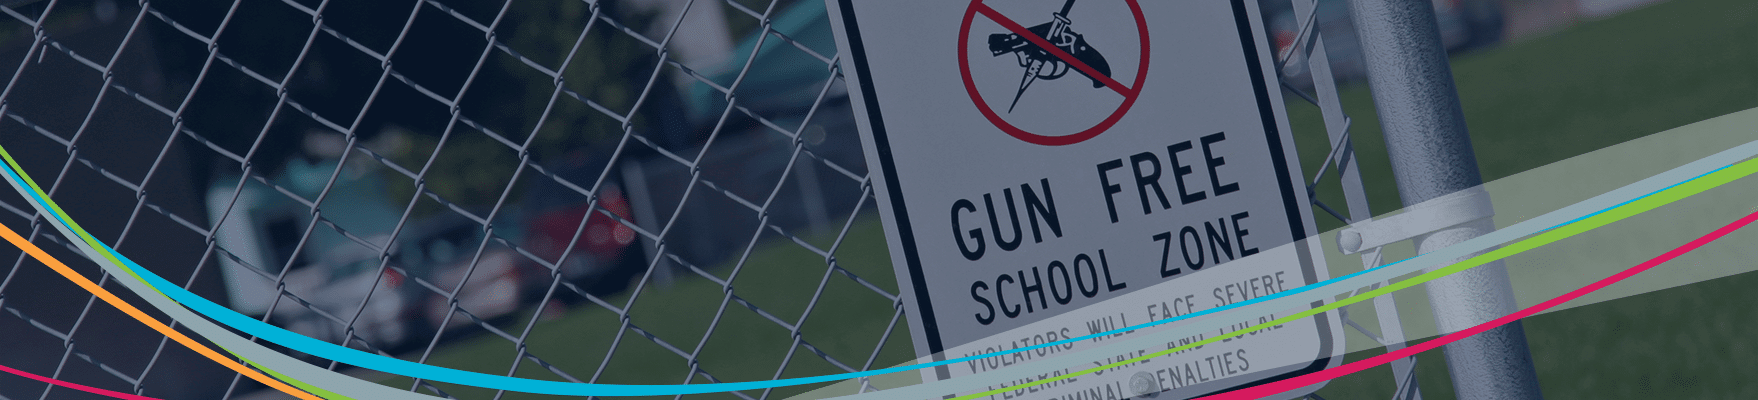 围栏上的无枪区标志 校园暴力预防标题